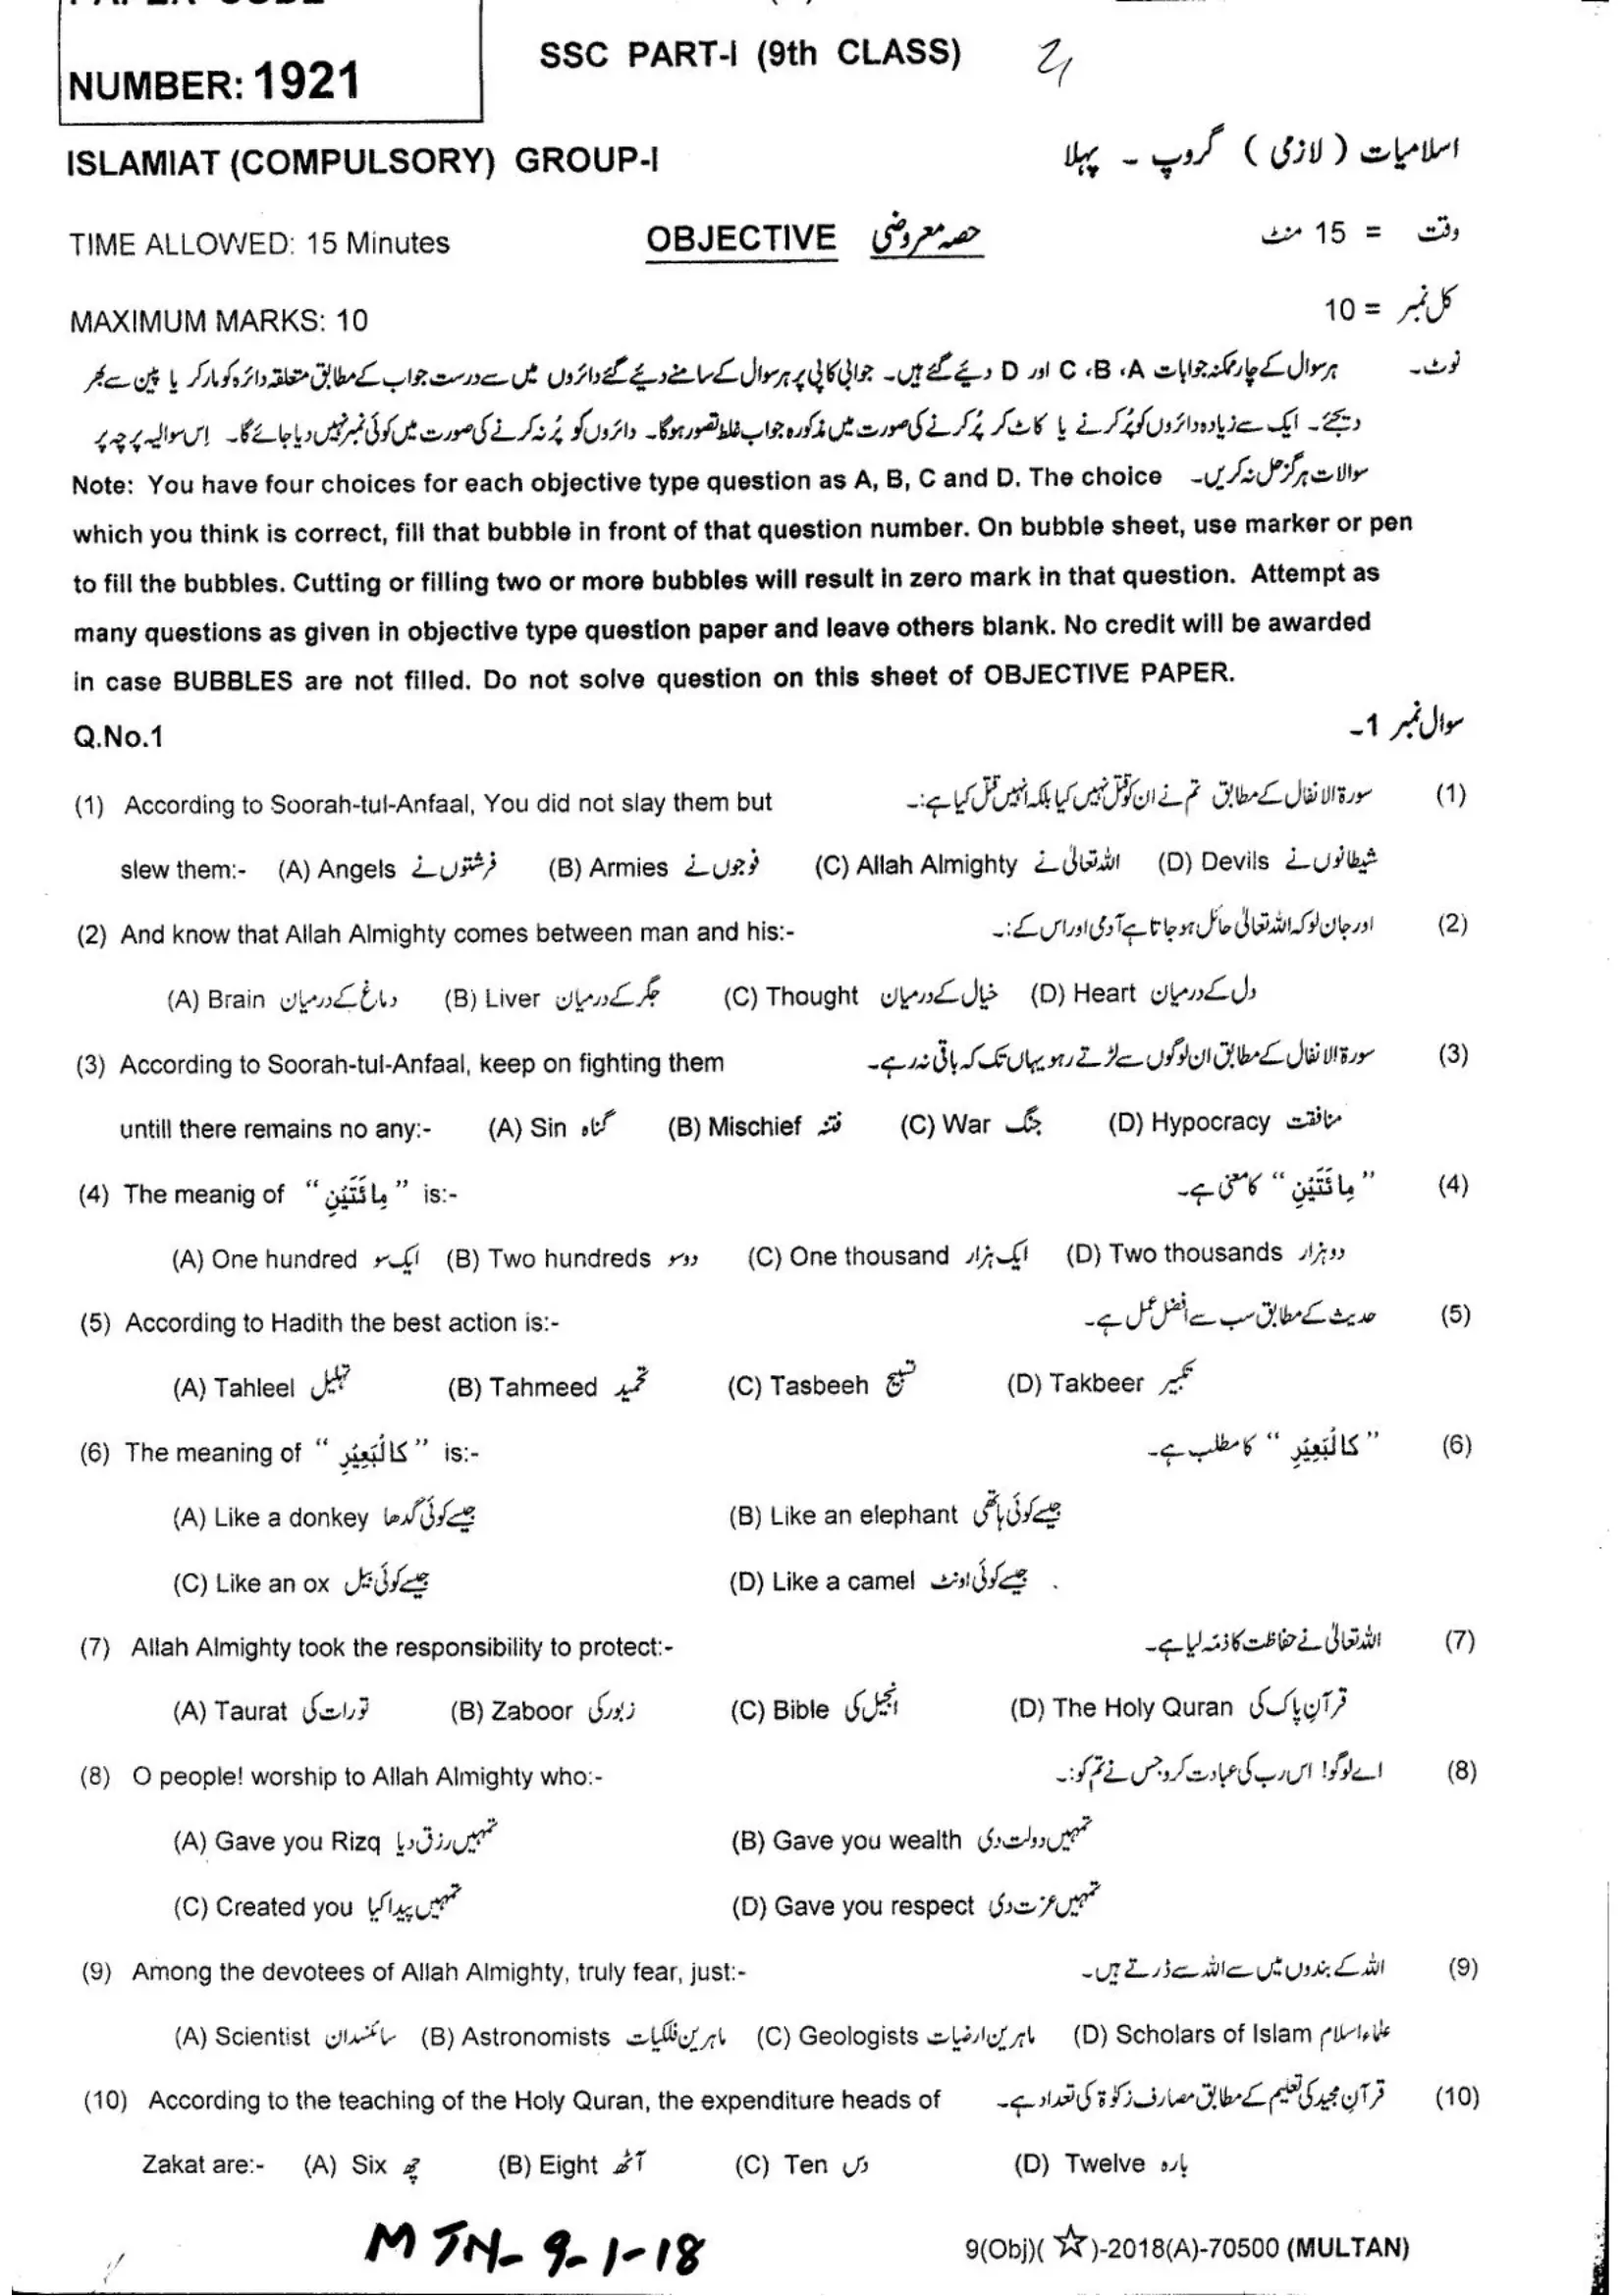 Islamiyat (C)-9 MTN-(G1-G2)-18